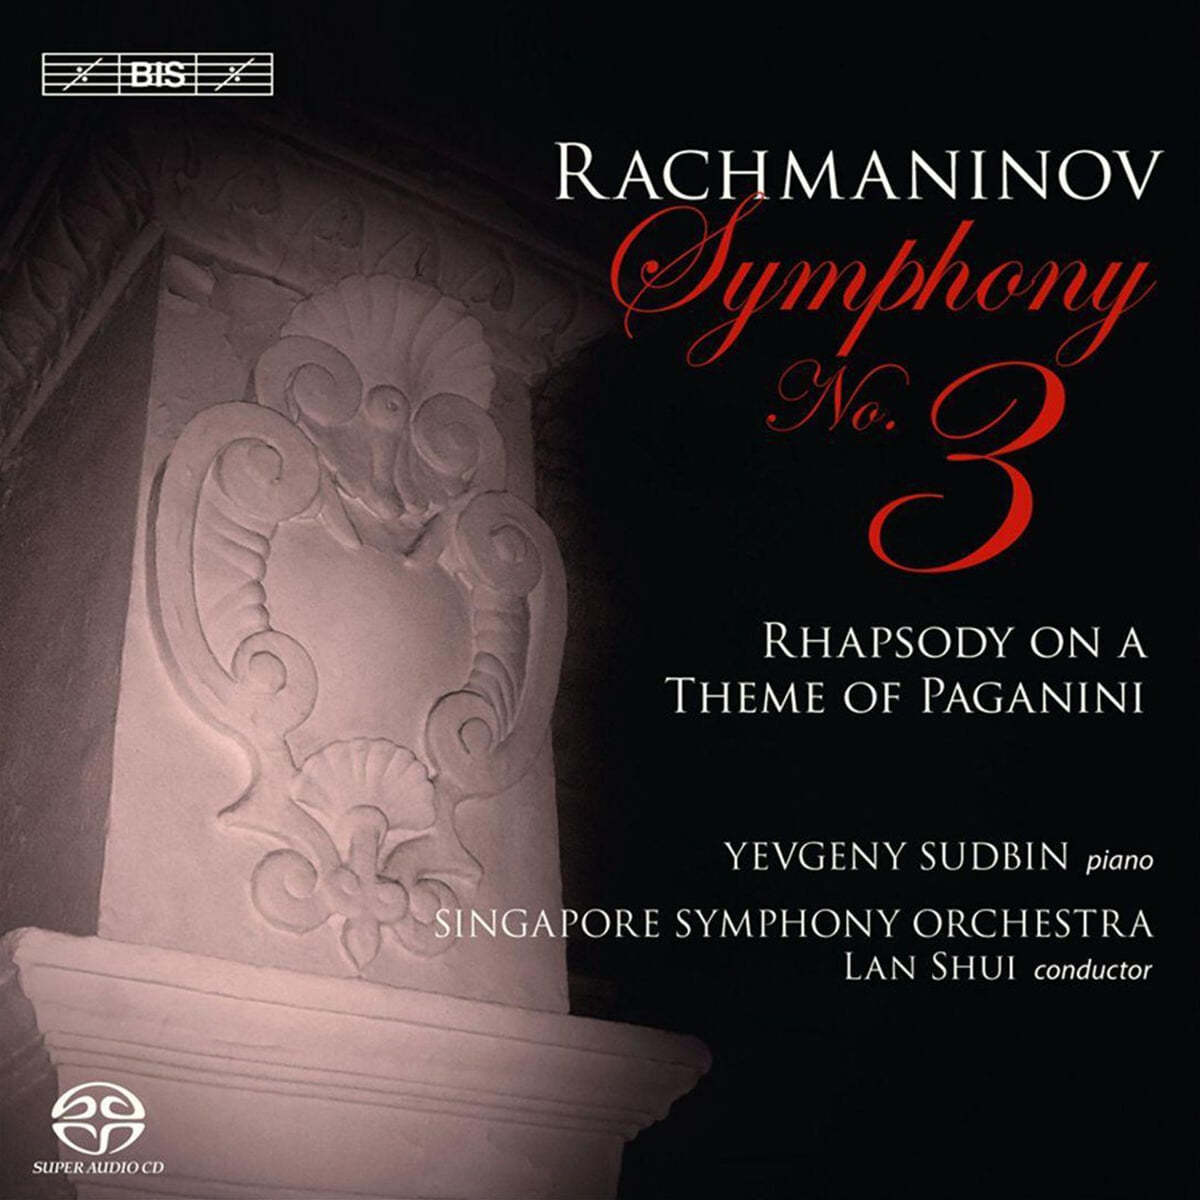 Yevgeny Sudbin 라흐마니노프: 교향곡 3번, 파가니니 주제에 의한 랩소디 (Rachmaninov: Symphony No.3, Paganini Rhapsody)